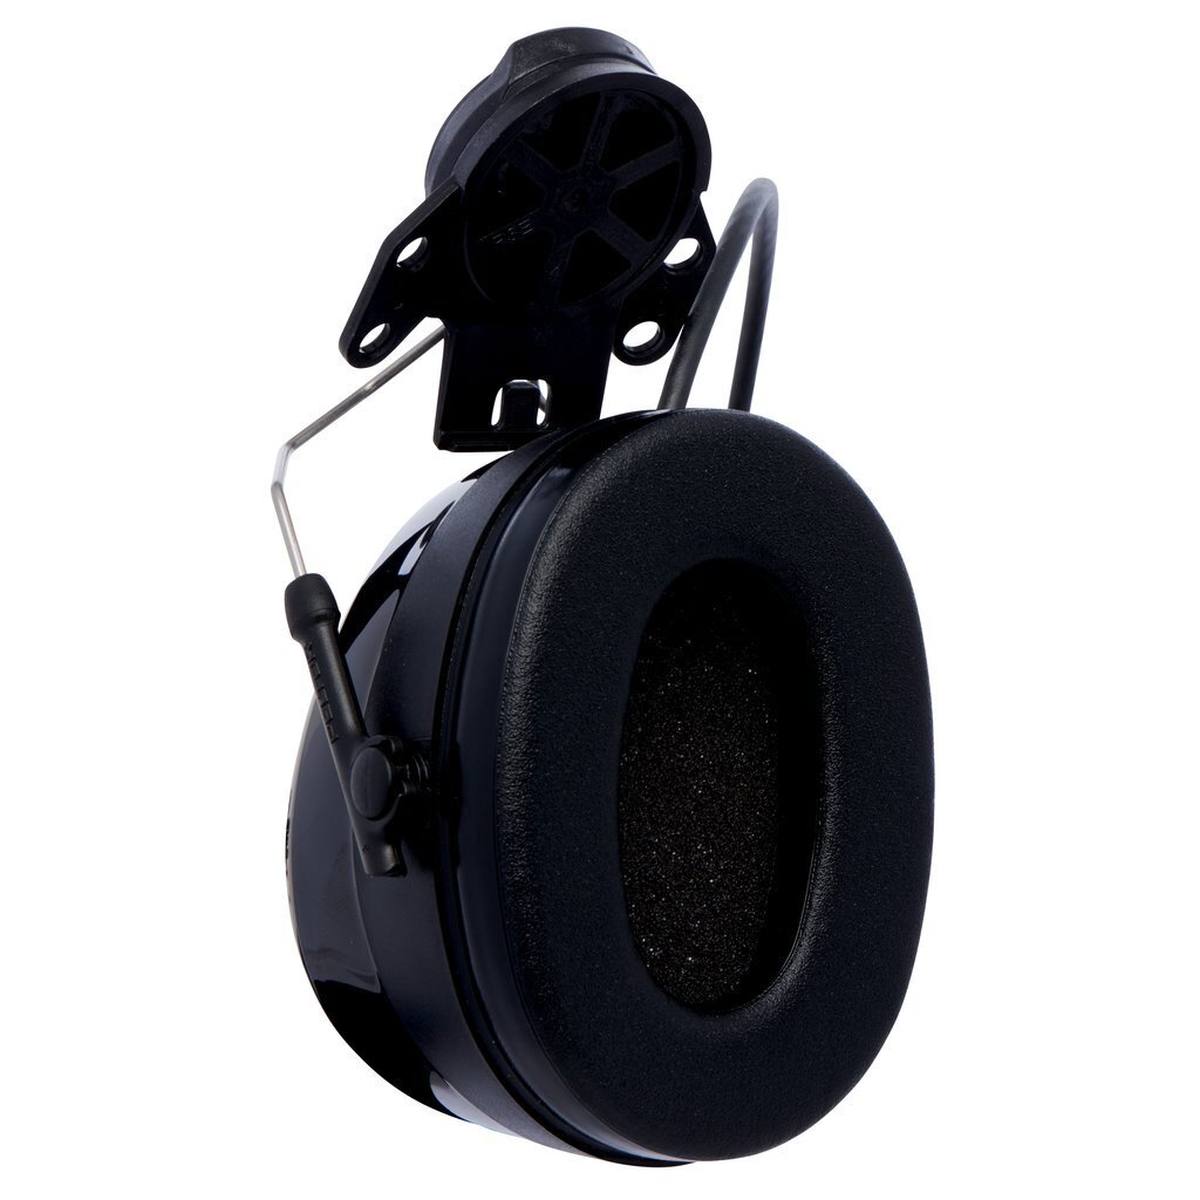 3M PELTOR WorkTunes Pro Auriculares de protección auditiva con radio FM, fijación al casco, negro